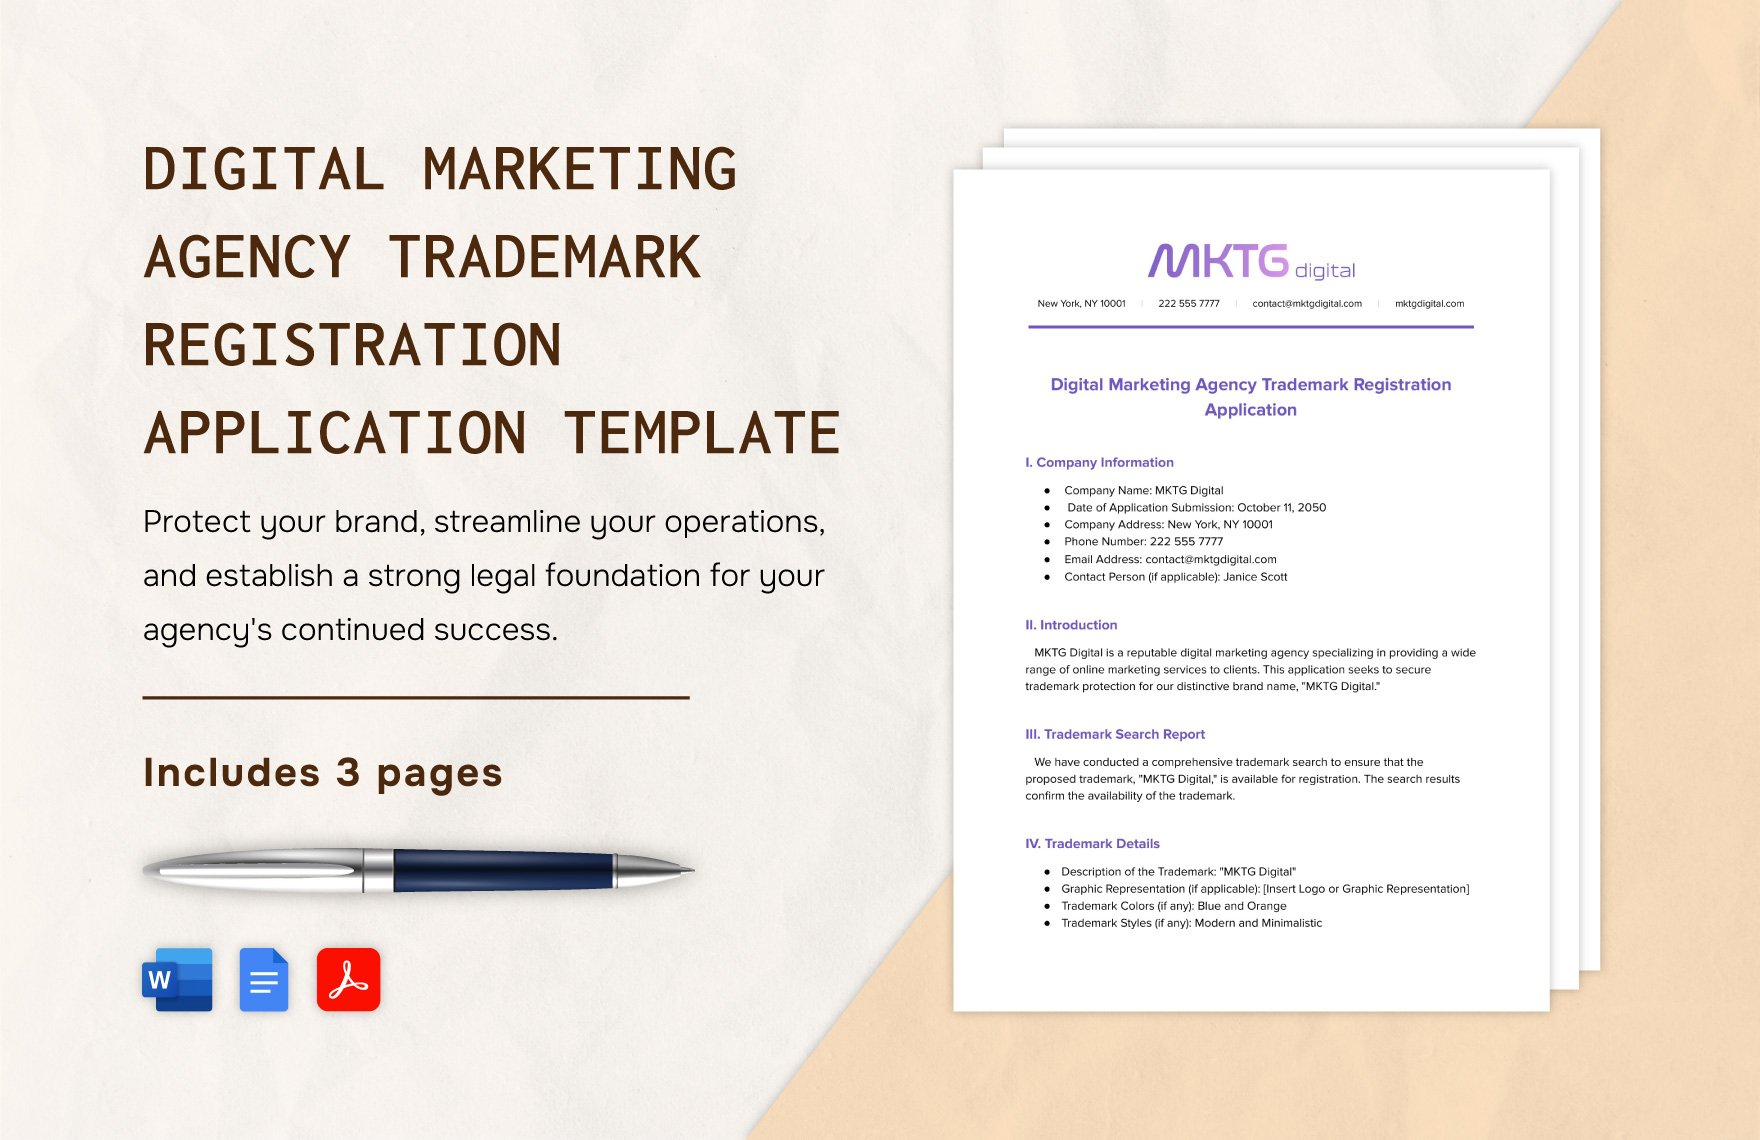 Digital Marketing Agency Trademark Registration Application Template